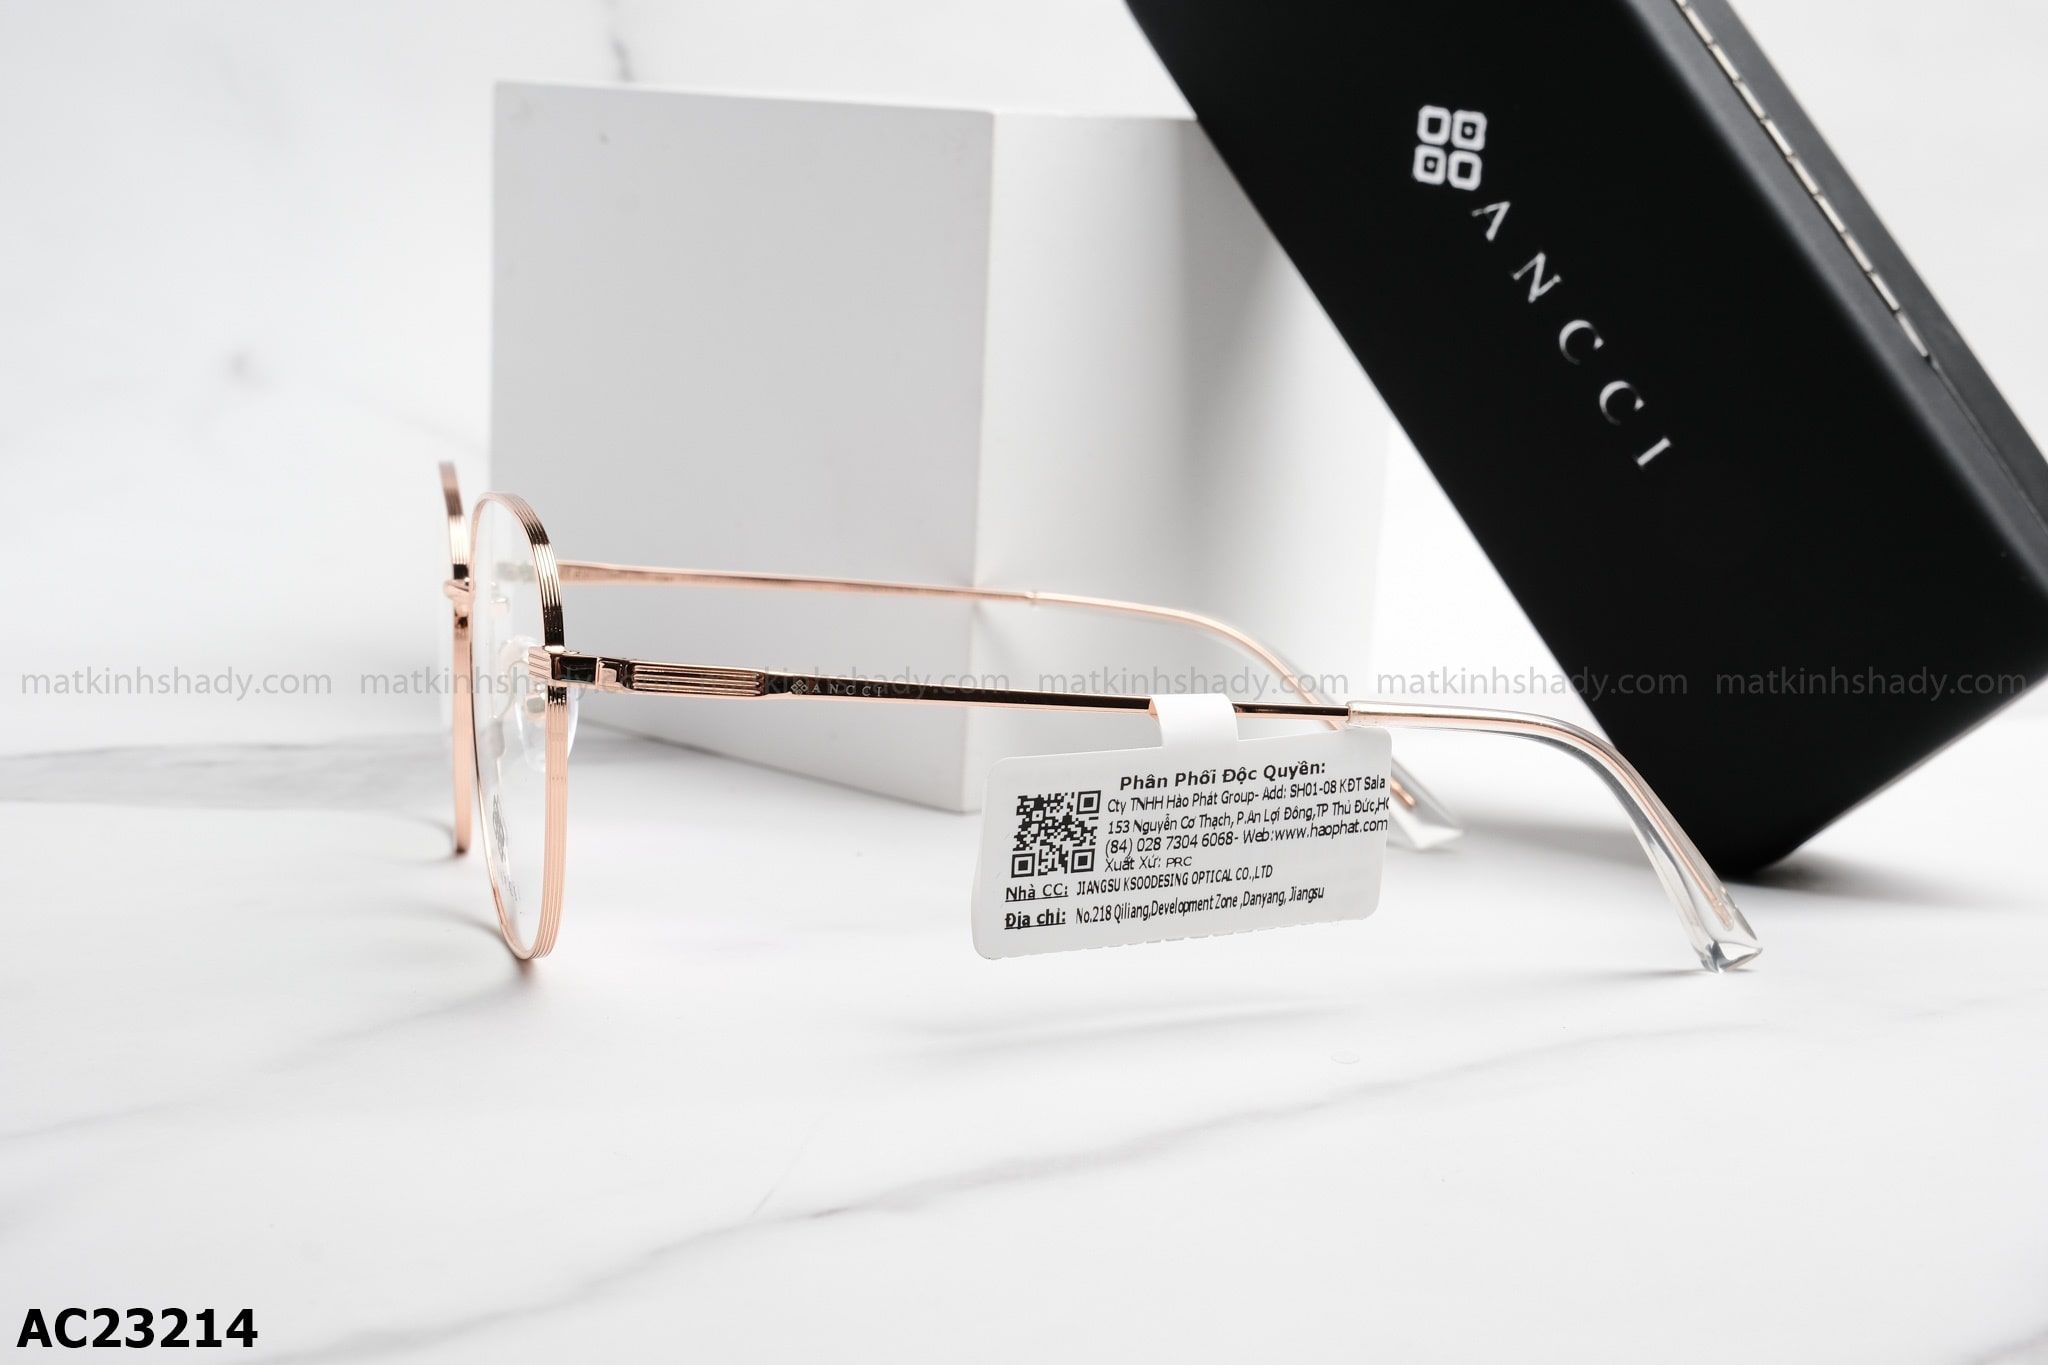  ANCCI Eyewear - Glasses - AC23214 